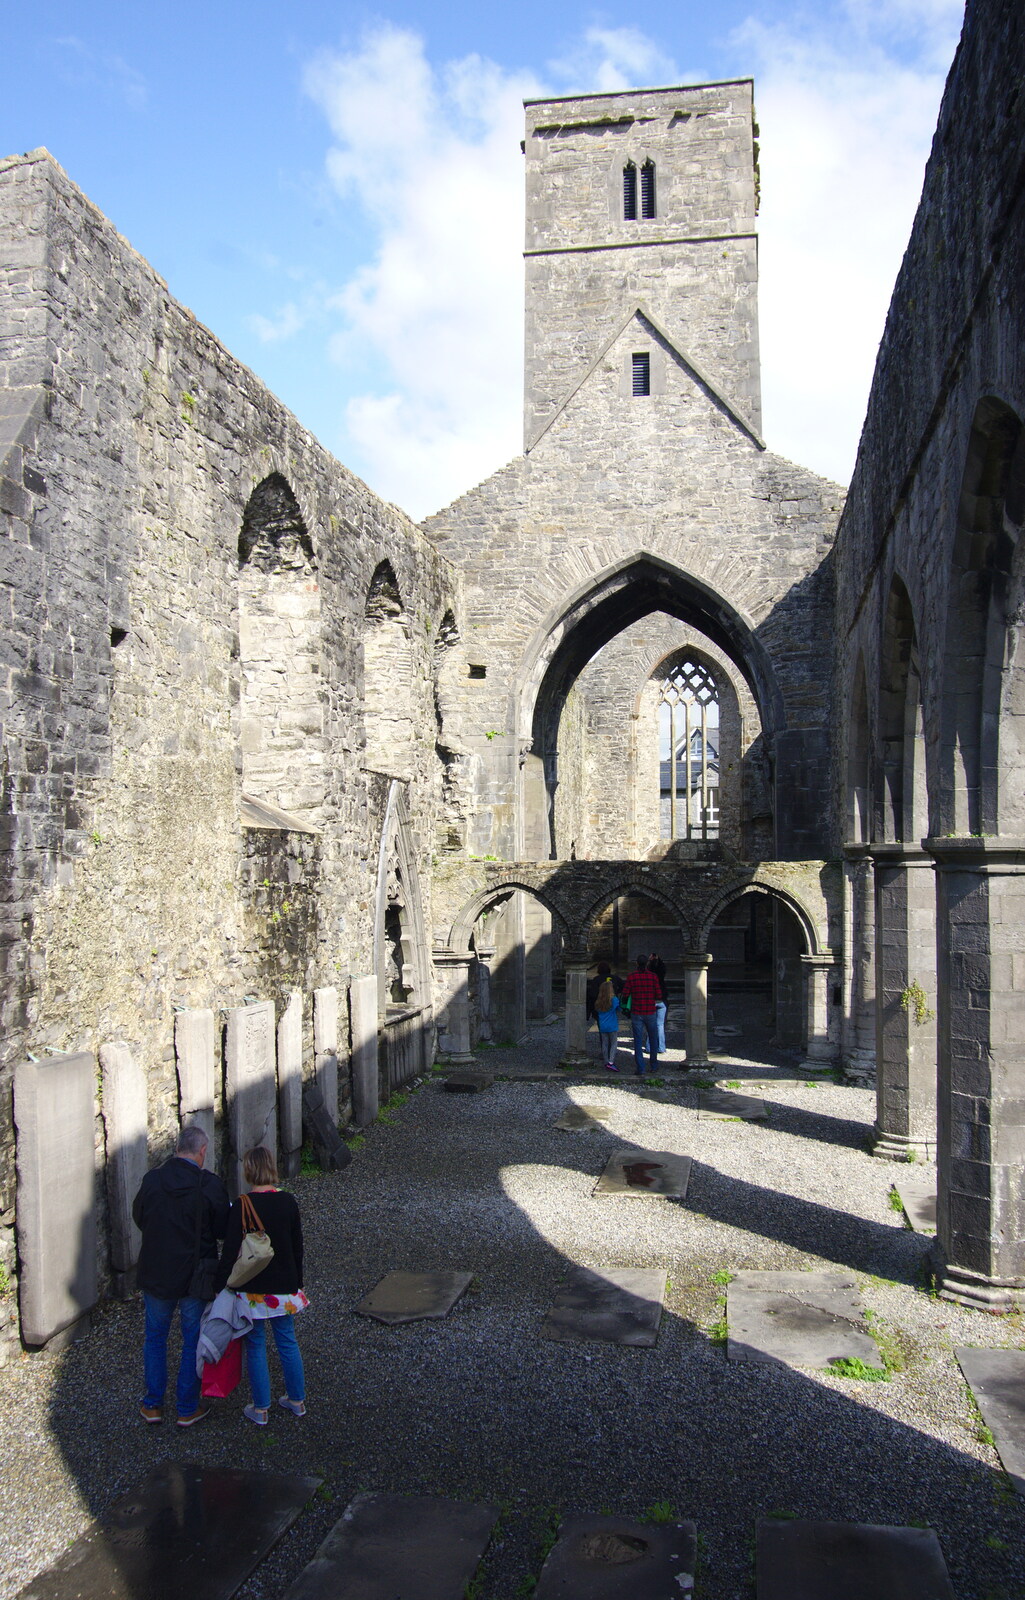 The ruins of Sligo Abbey from Florence Court and a Postcard from Sligo, Fermanagh and Sligo, Ireland - 21st August 2019